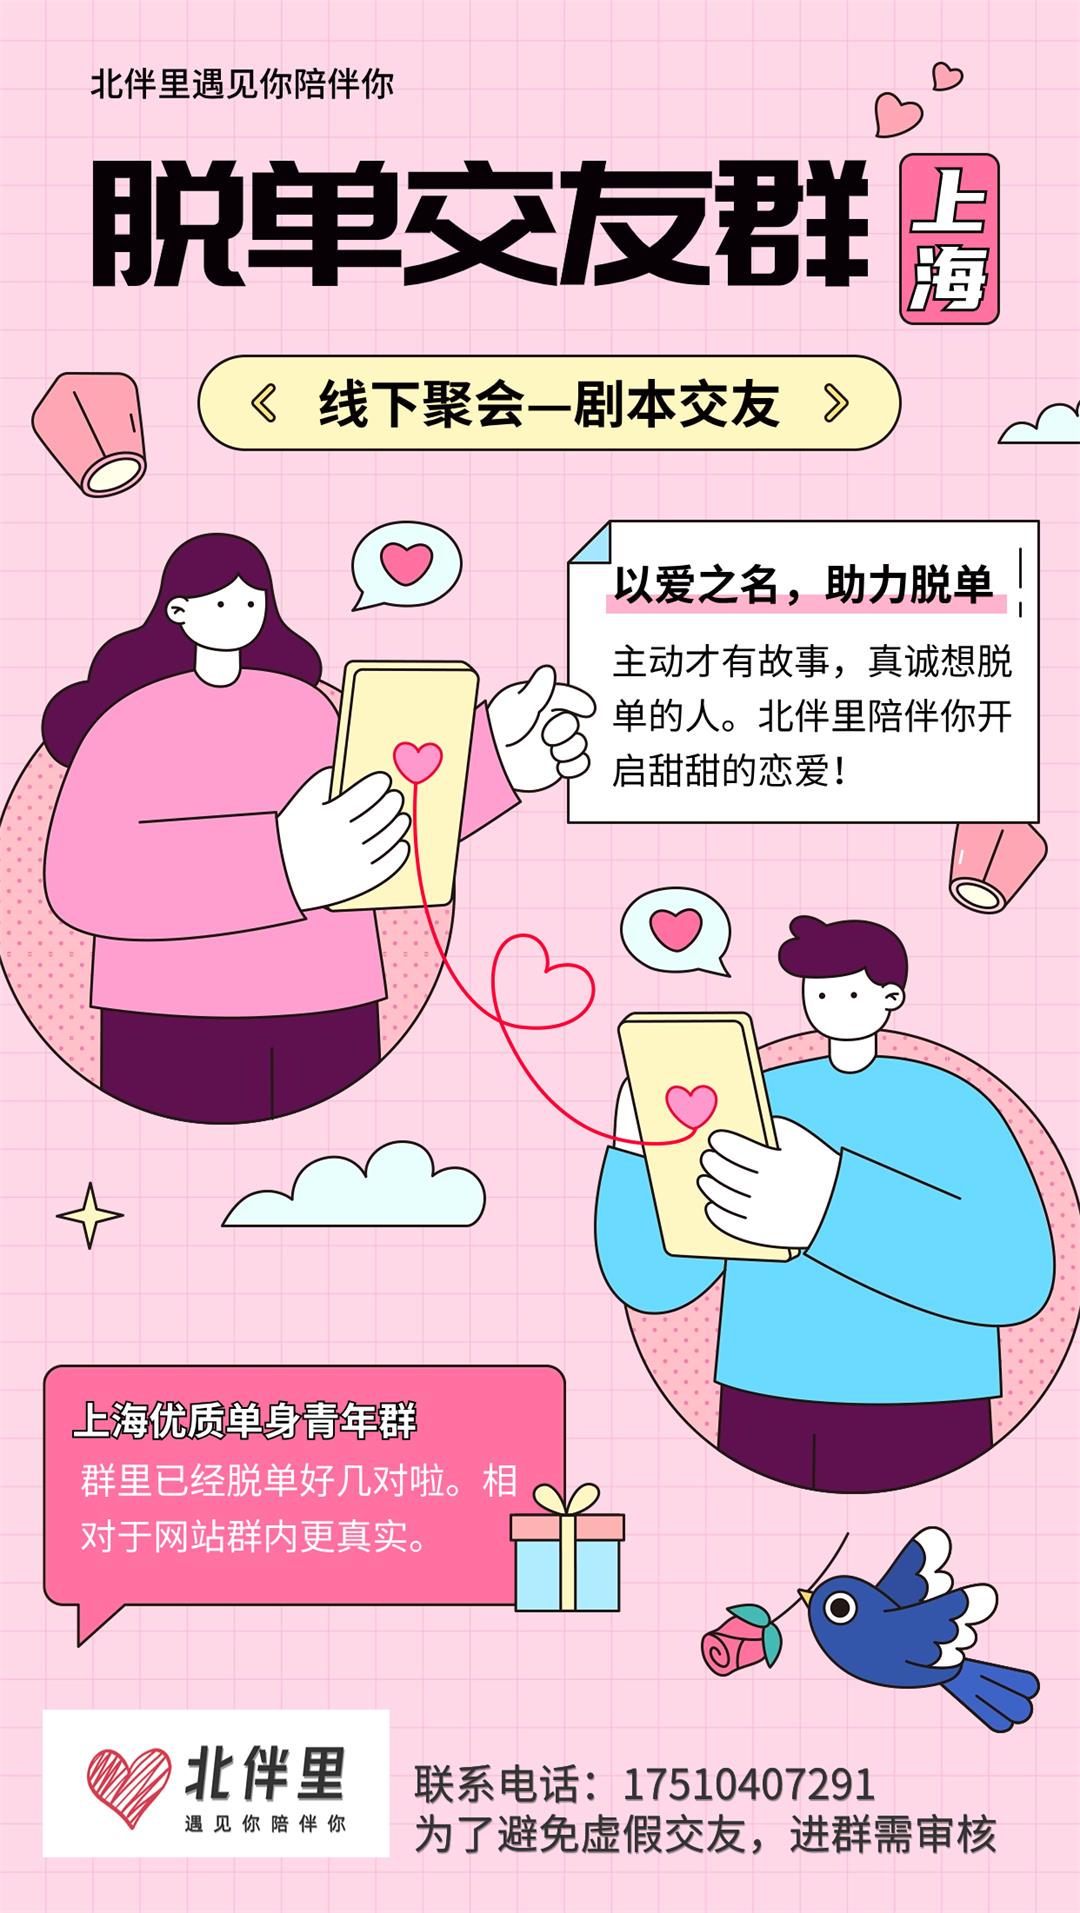 七夕情人节节日脱单攻略插画手机海报.jpg